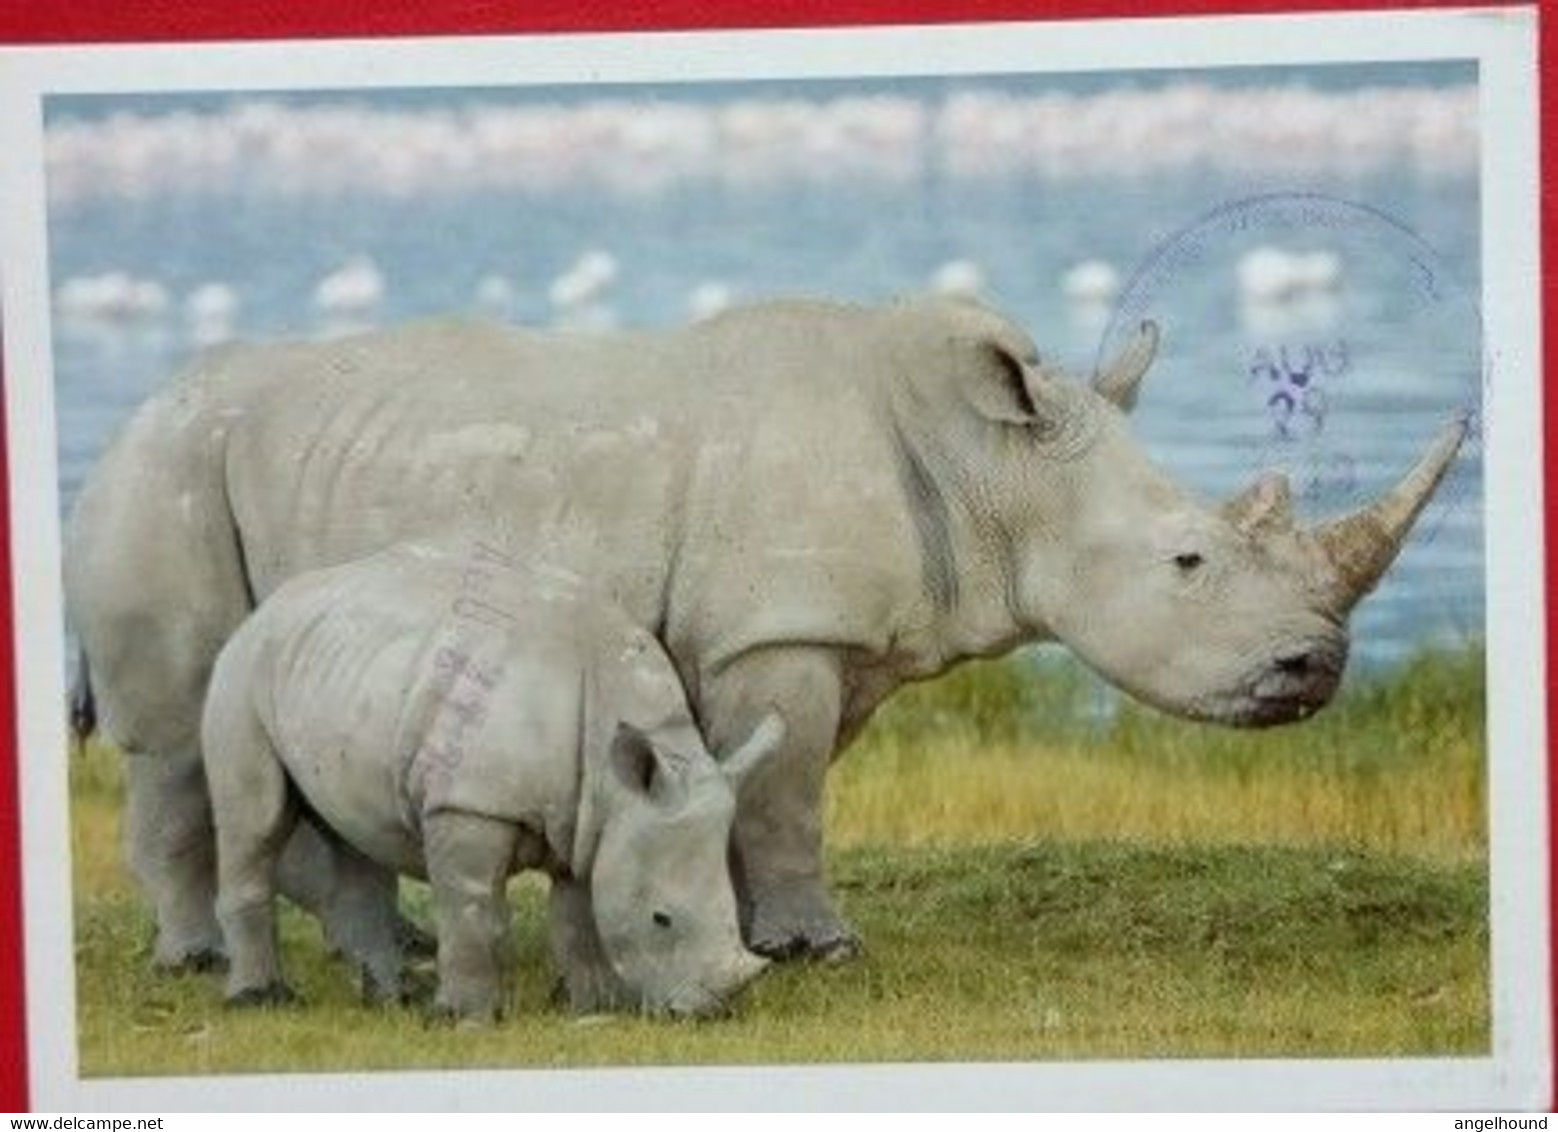 Rhinoceros - Rhinozeros